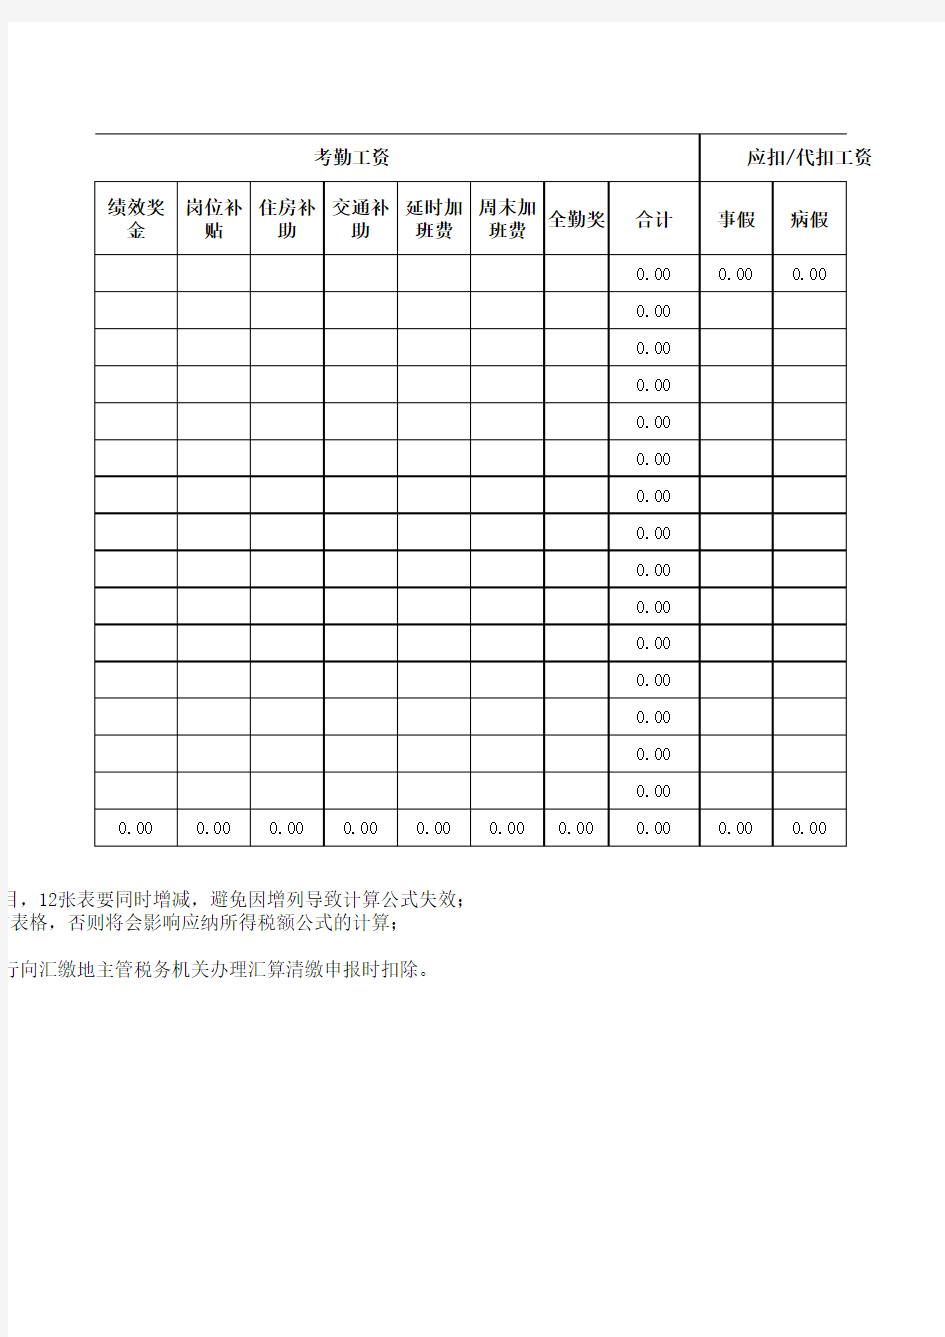 2019年新个税工资表模板(带公式)